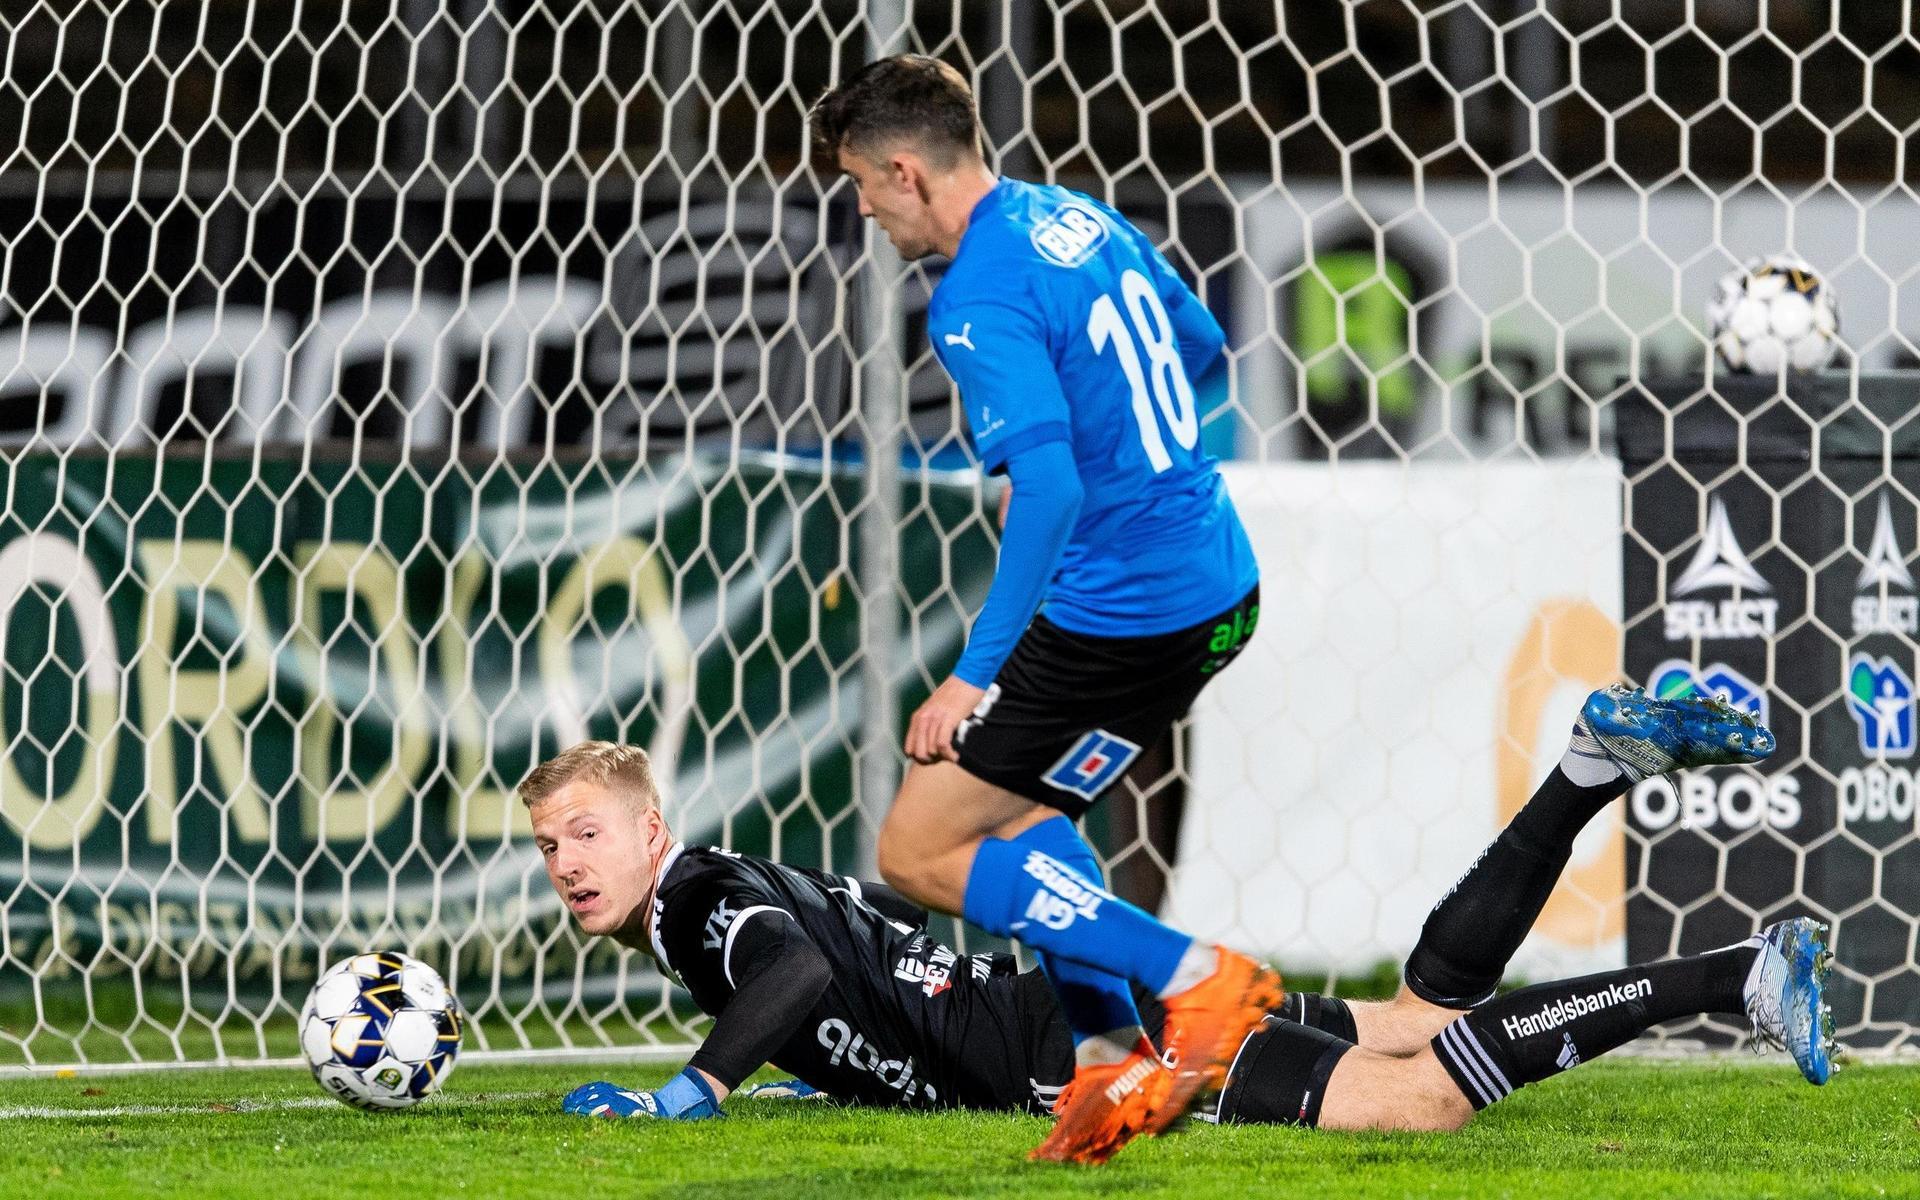 Emil Tot Wikström spikade segern mot Umeå i onsdags kväll med sitt 4-0-mål.